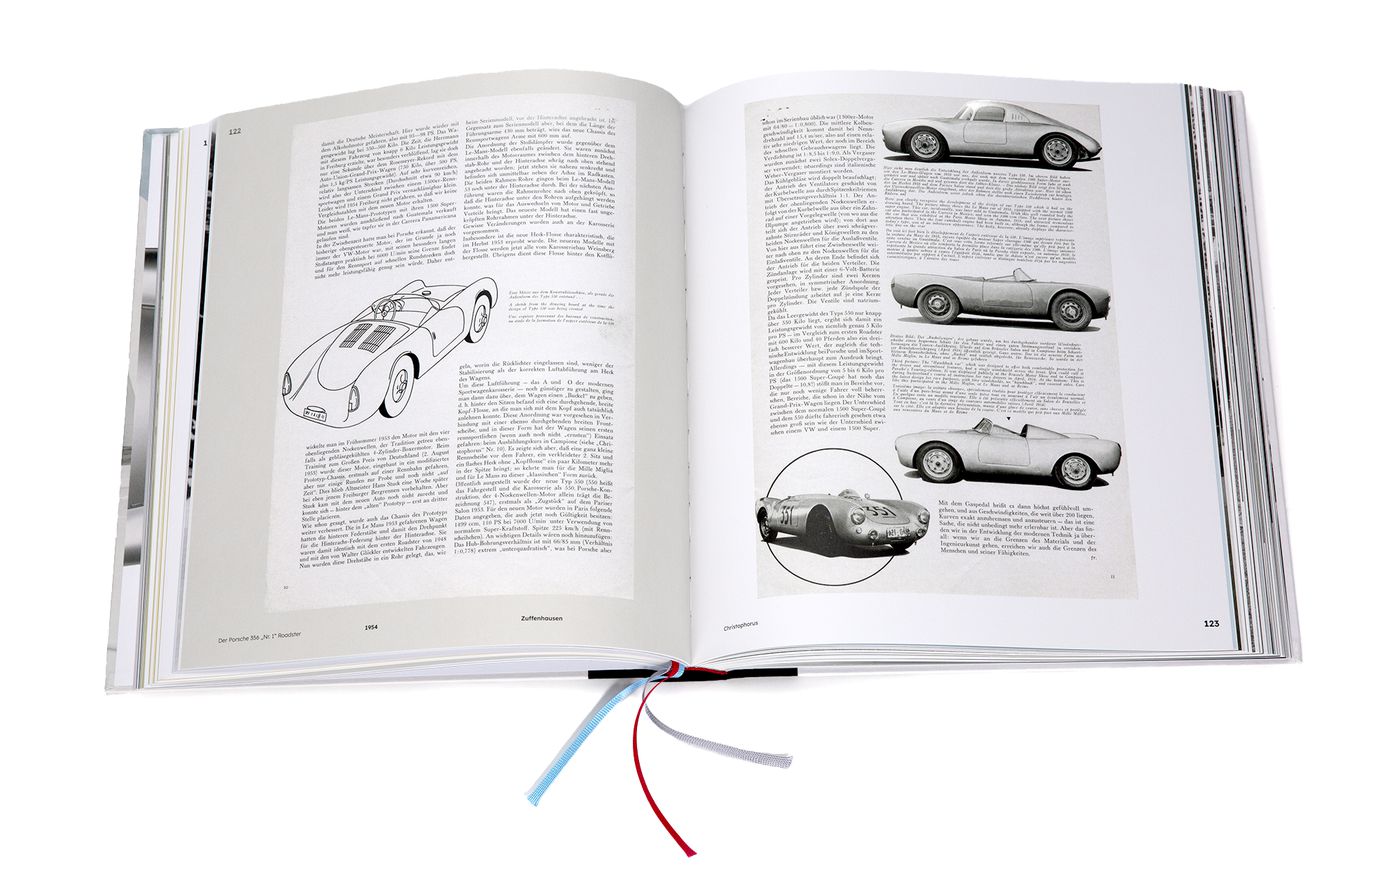 Die Geschichte des Porsche 356 No. 1
Die Geschichte des Porsche 